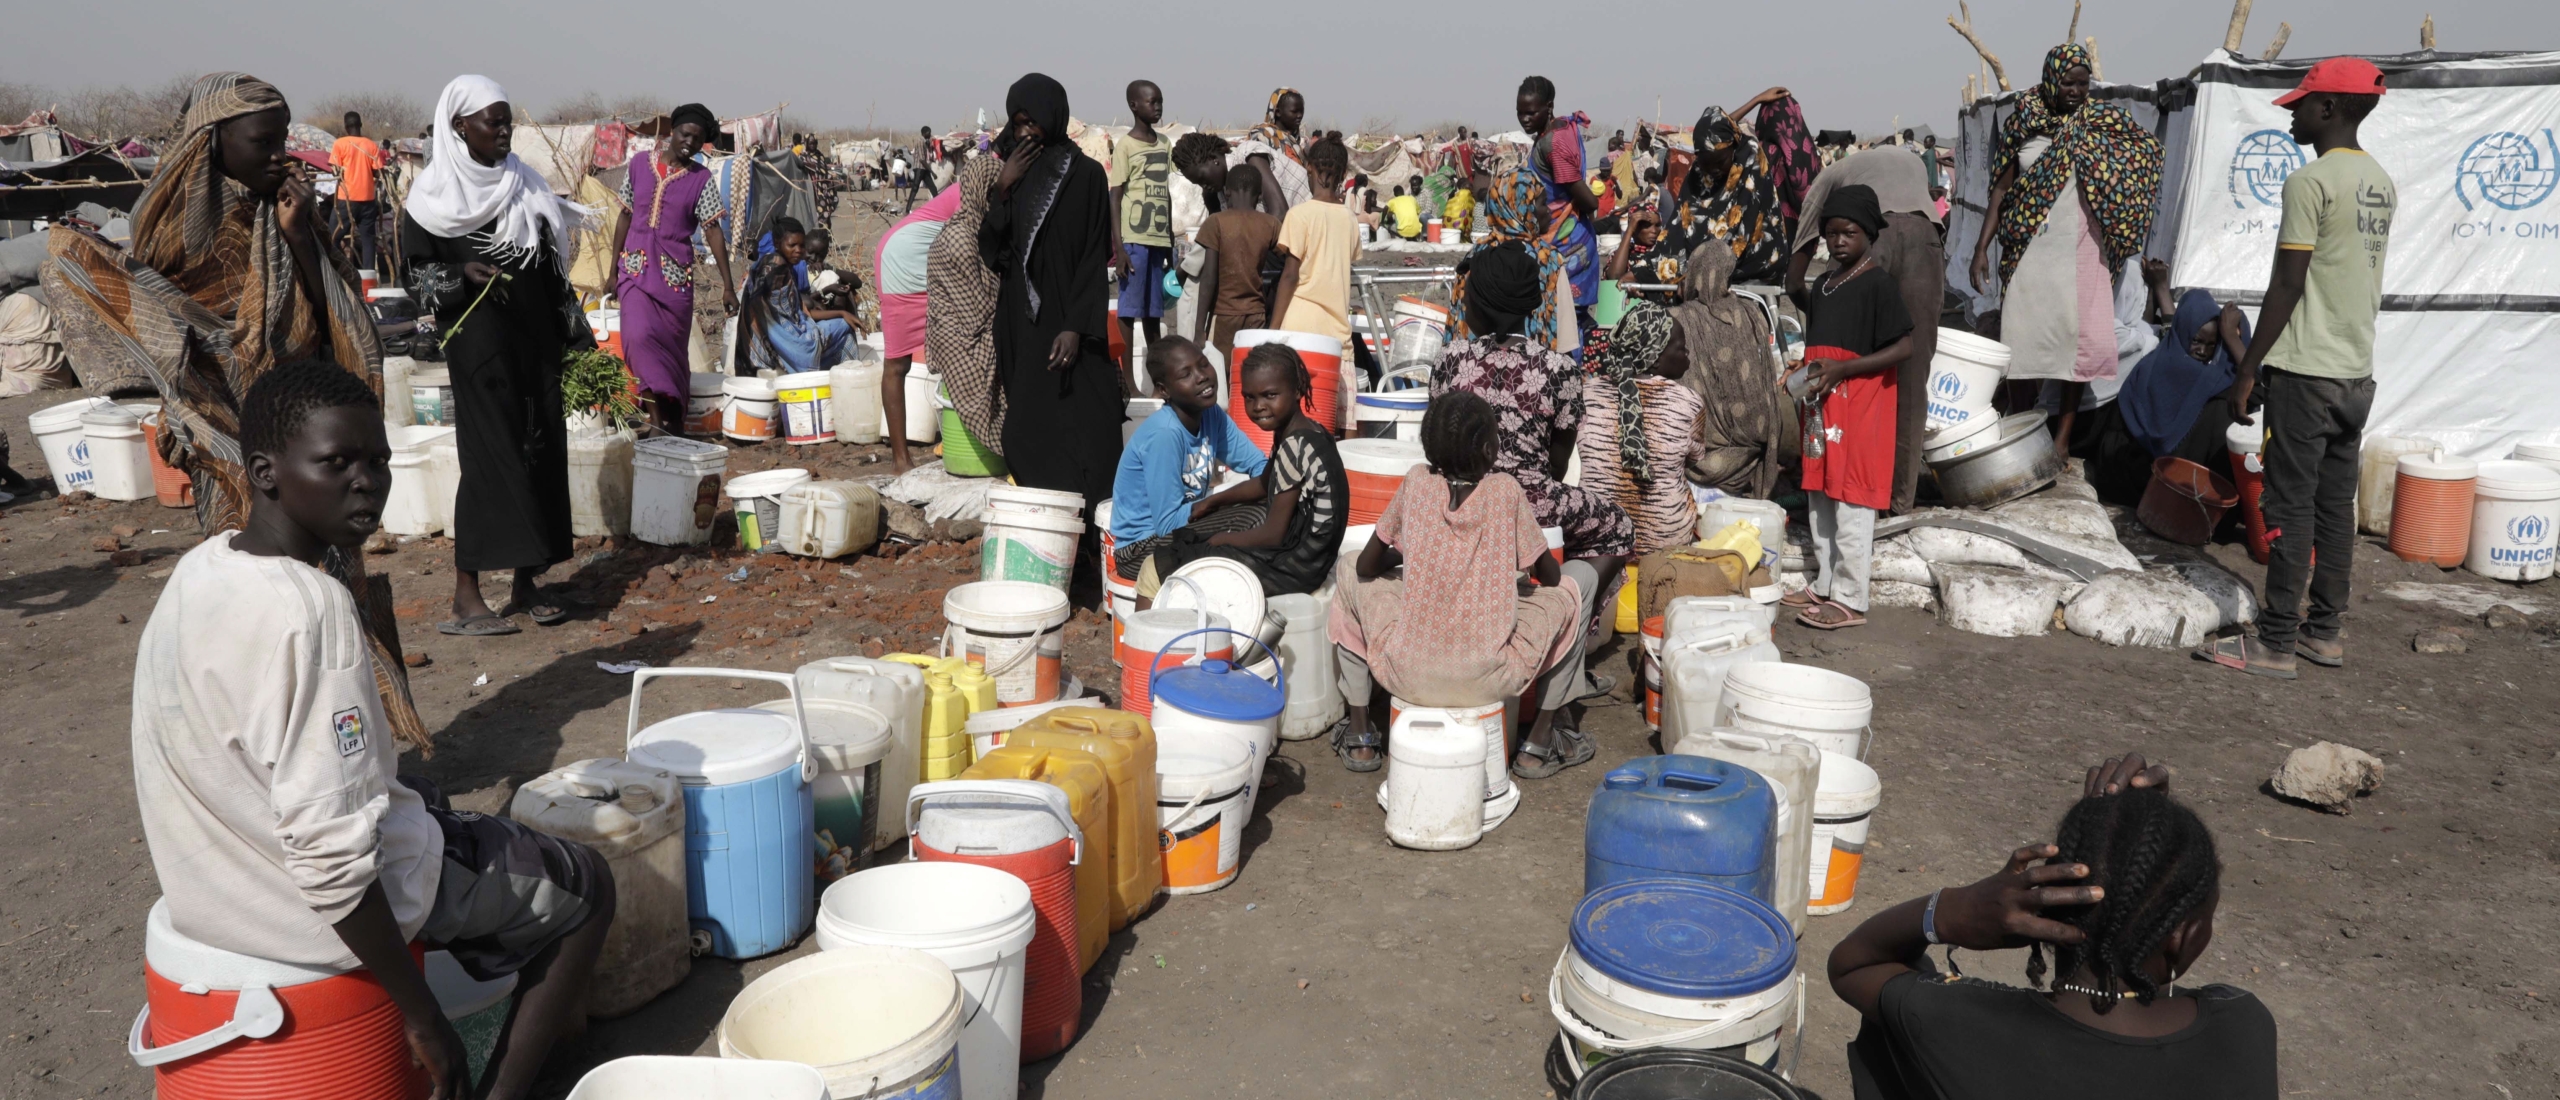 AzG: regenseizoen brengt hulp Soedanese vluchtelingen in gevaar